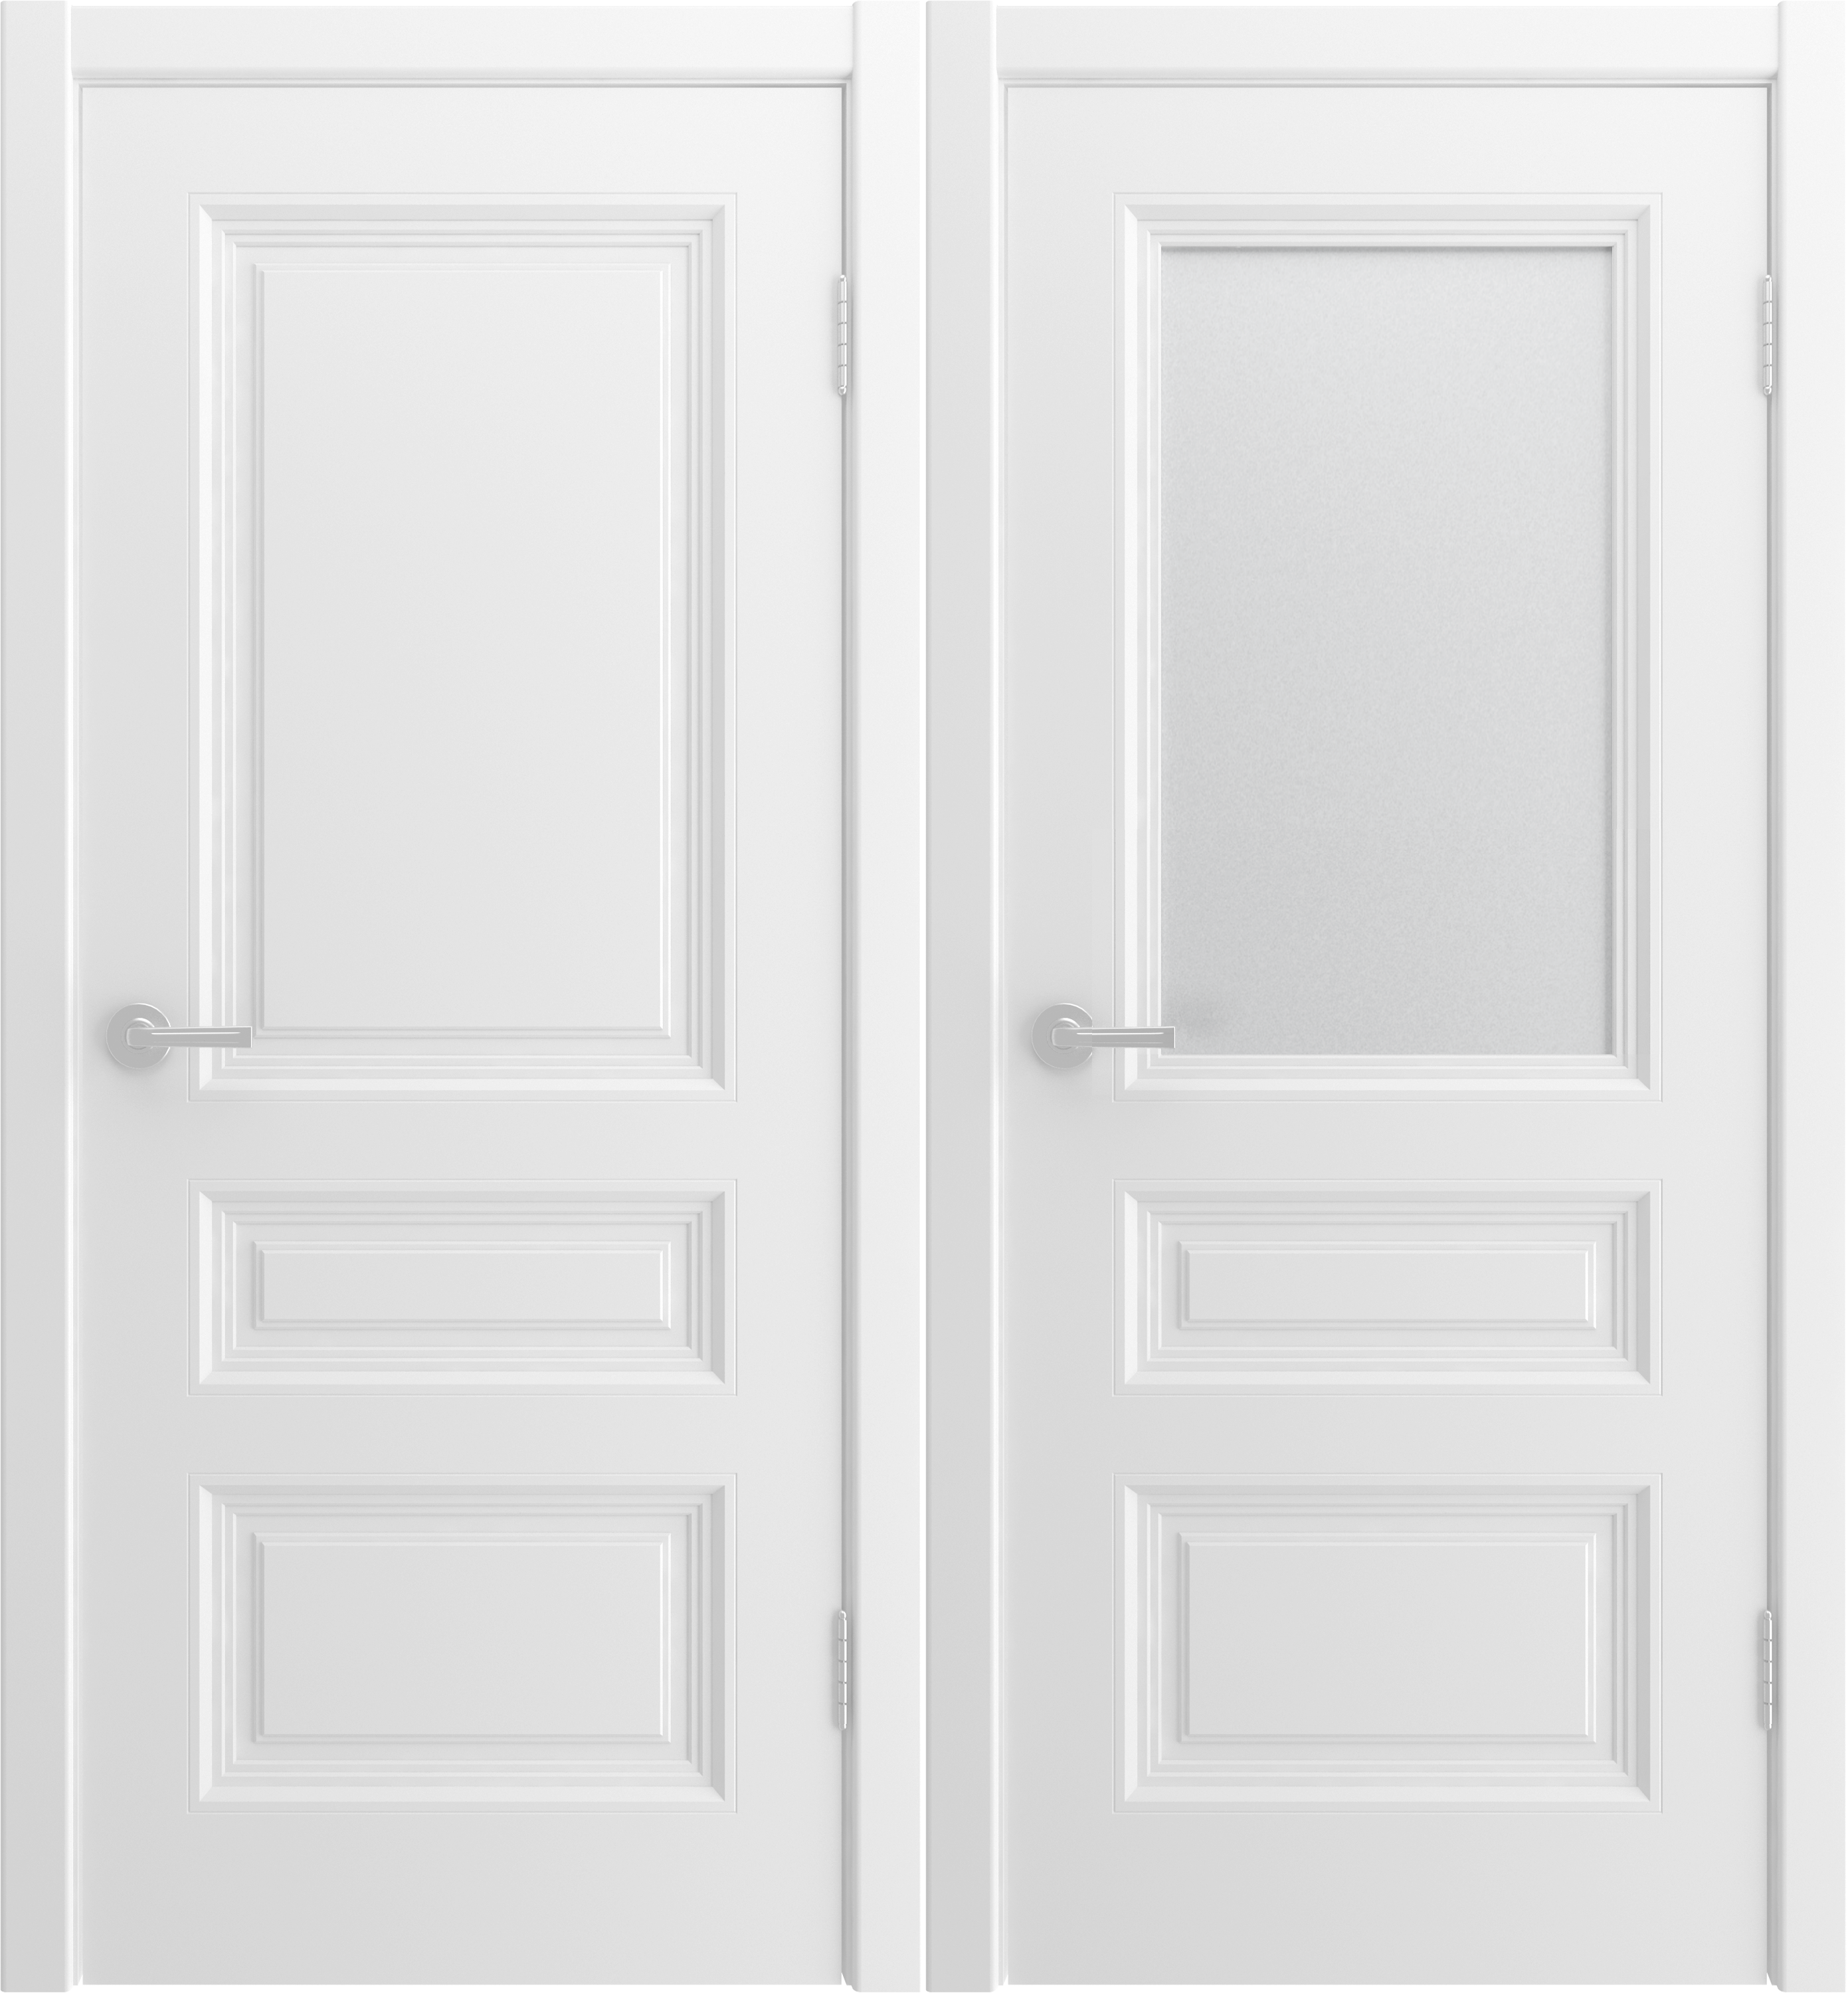 Двери юкка сайт. Юкка межкомнатная дверь Квадро 7. Ульяновская дверь belini-222 белая эмаль ДГ. Двери Юкка Квадро 7. Межкомнатные двери Юкка Чебоксары.